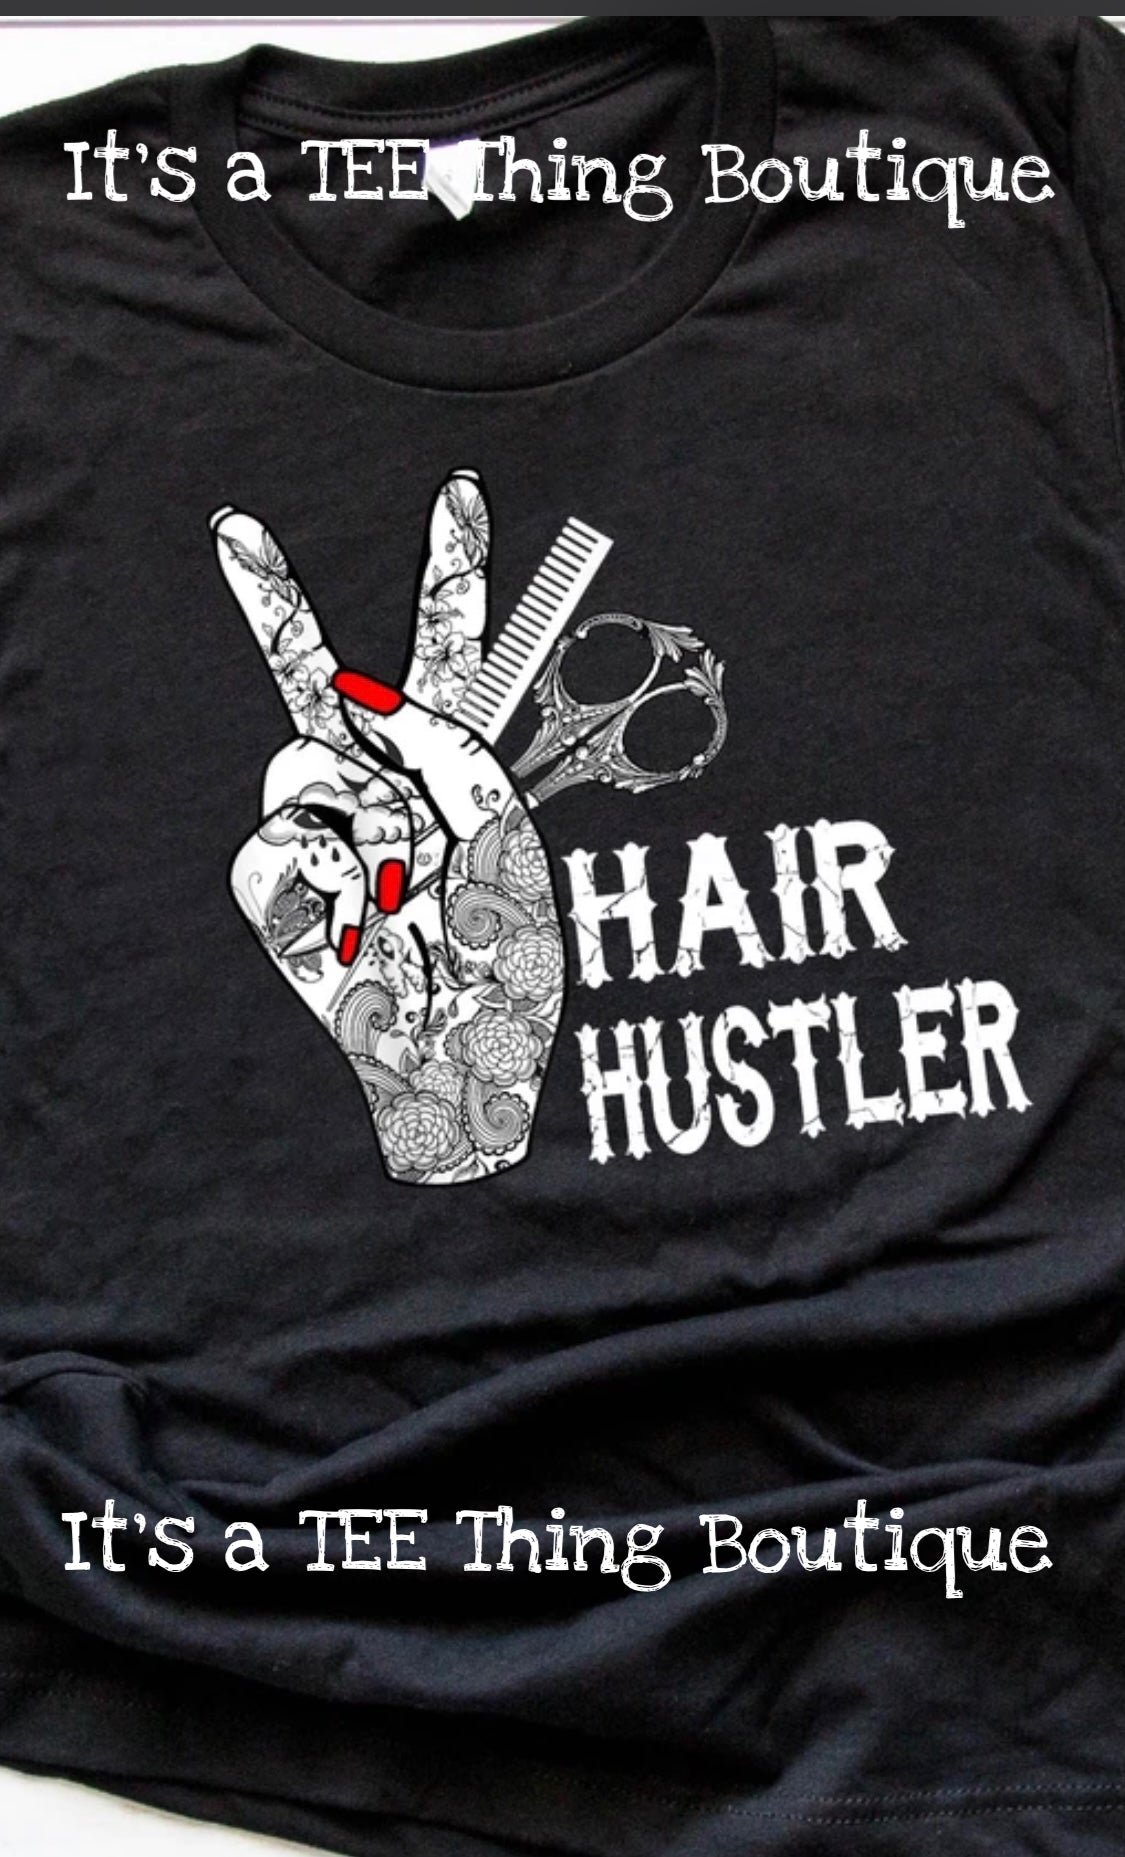 Hair hustler